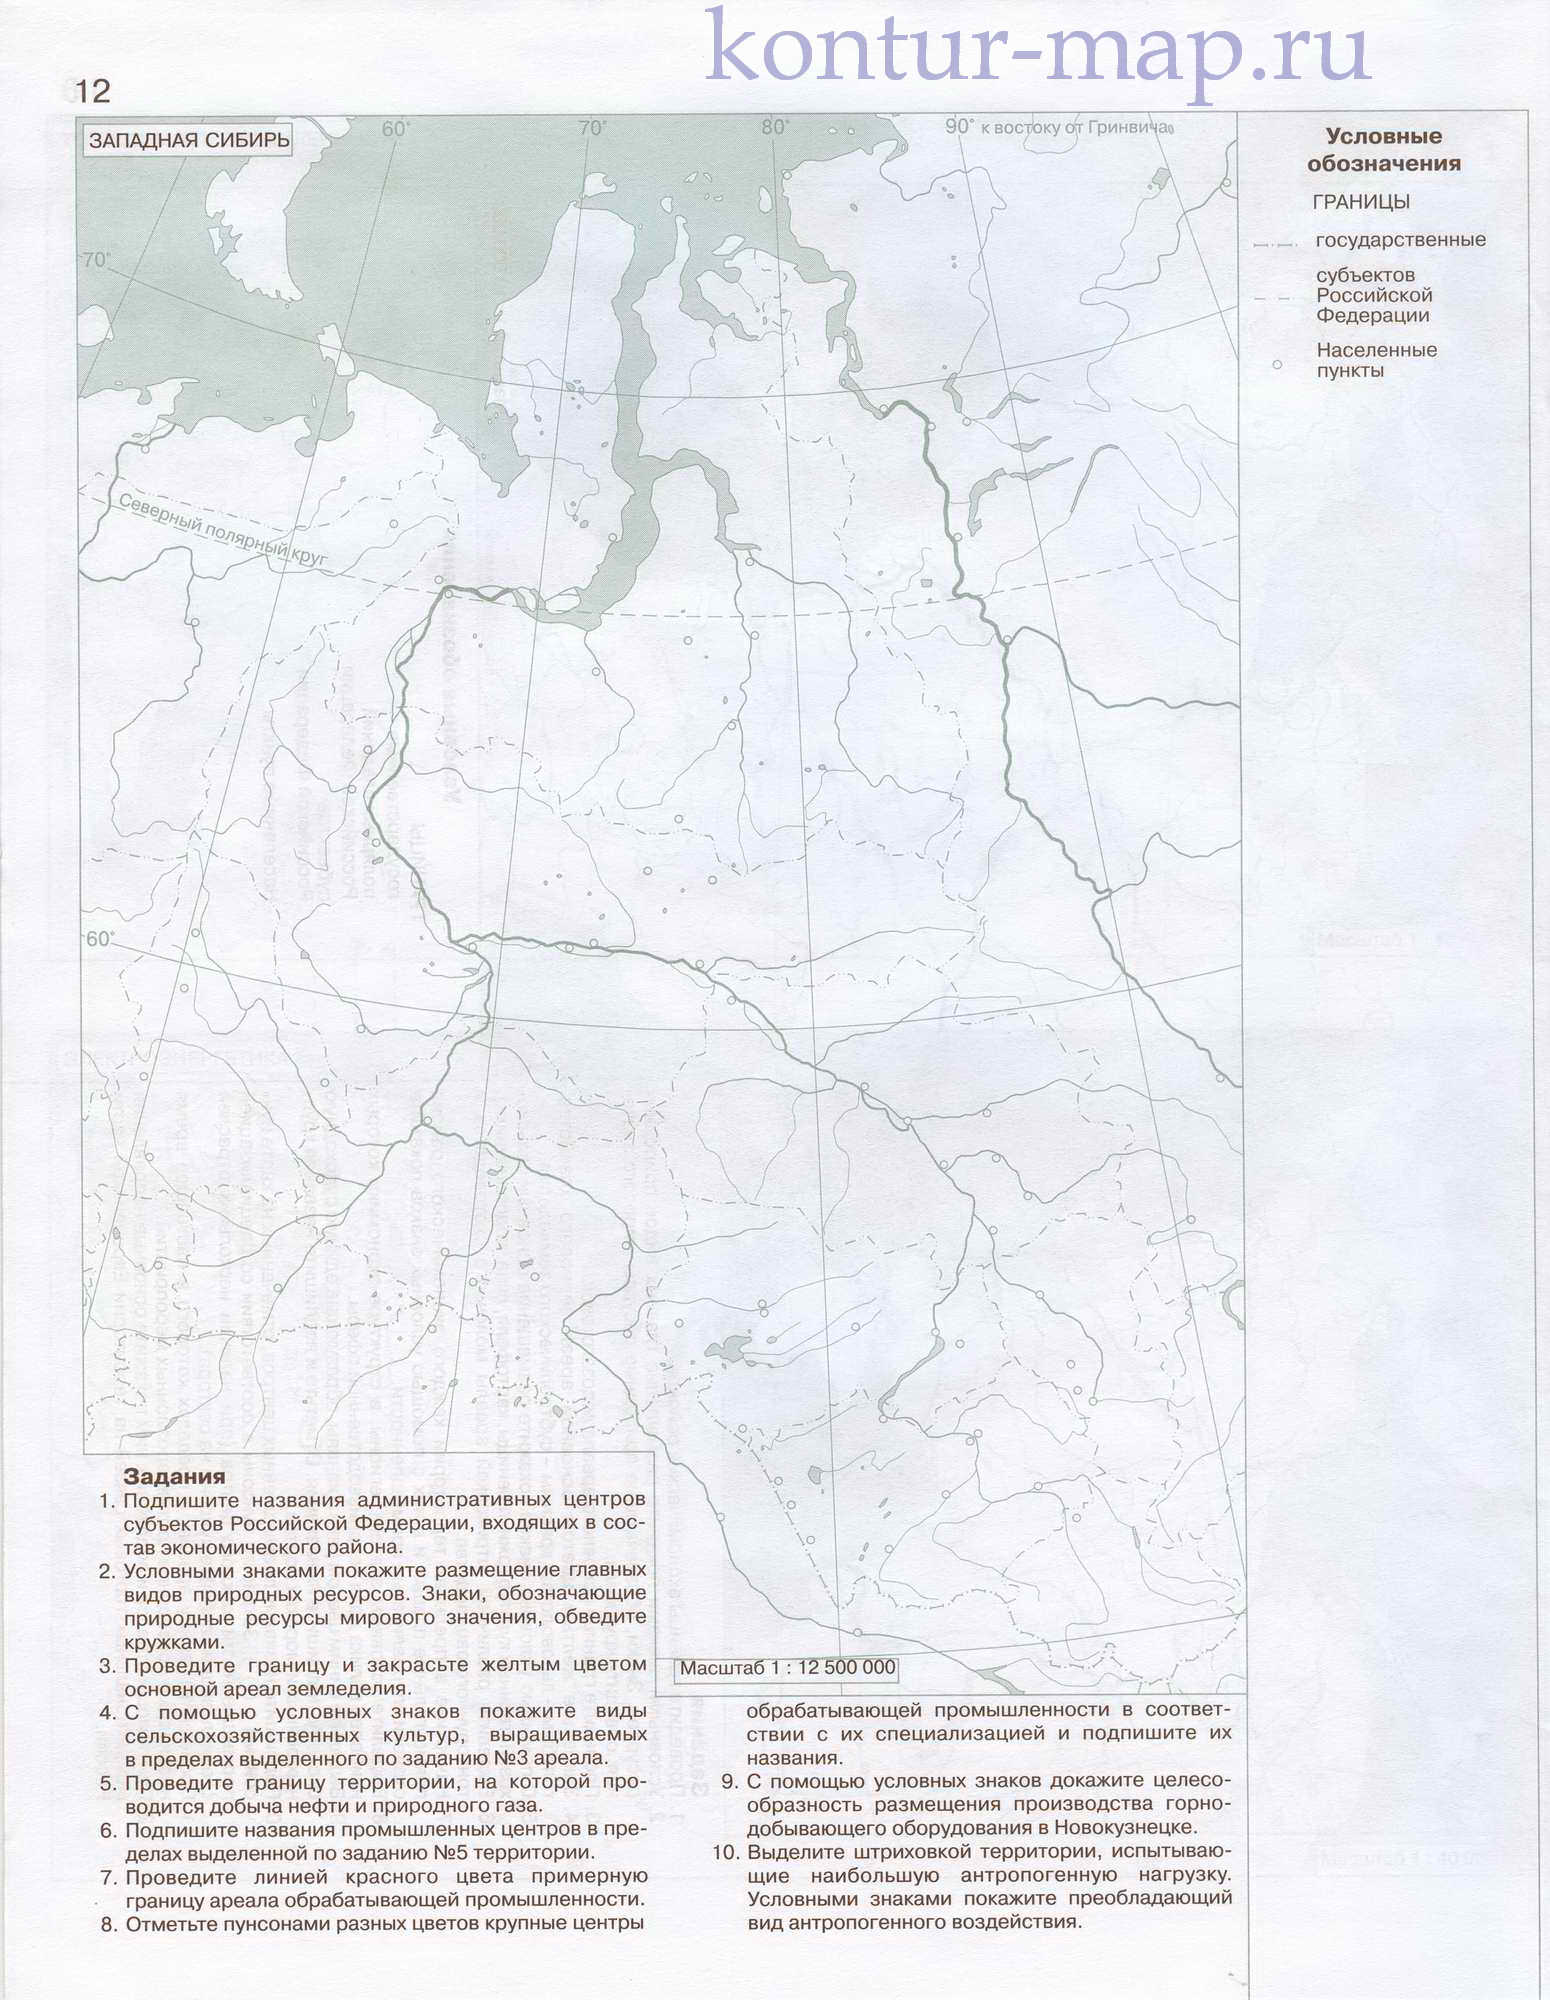 Контурная карта Западная Сибирь. Экономическая географии 9 класса - контурная карта Западной Сибири, A0 - 